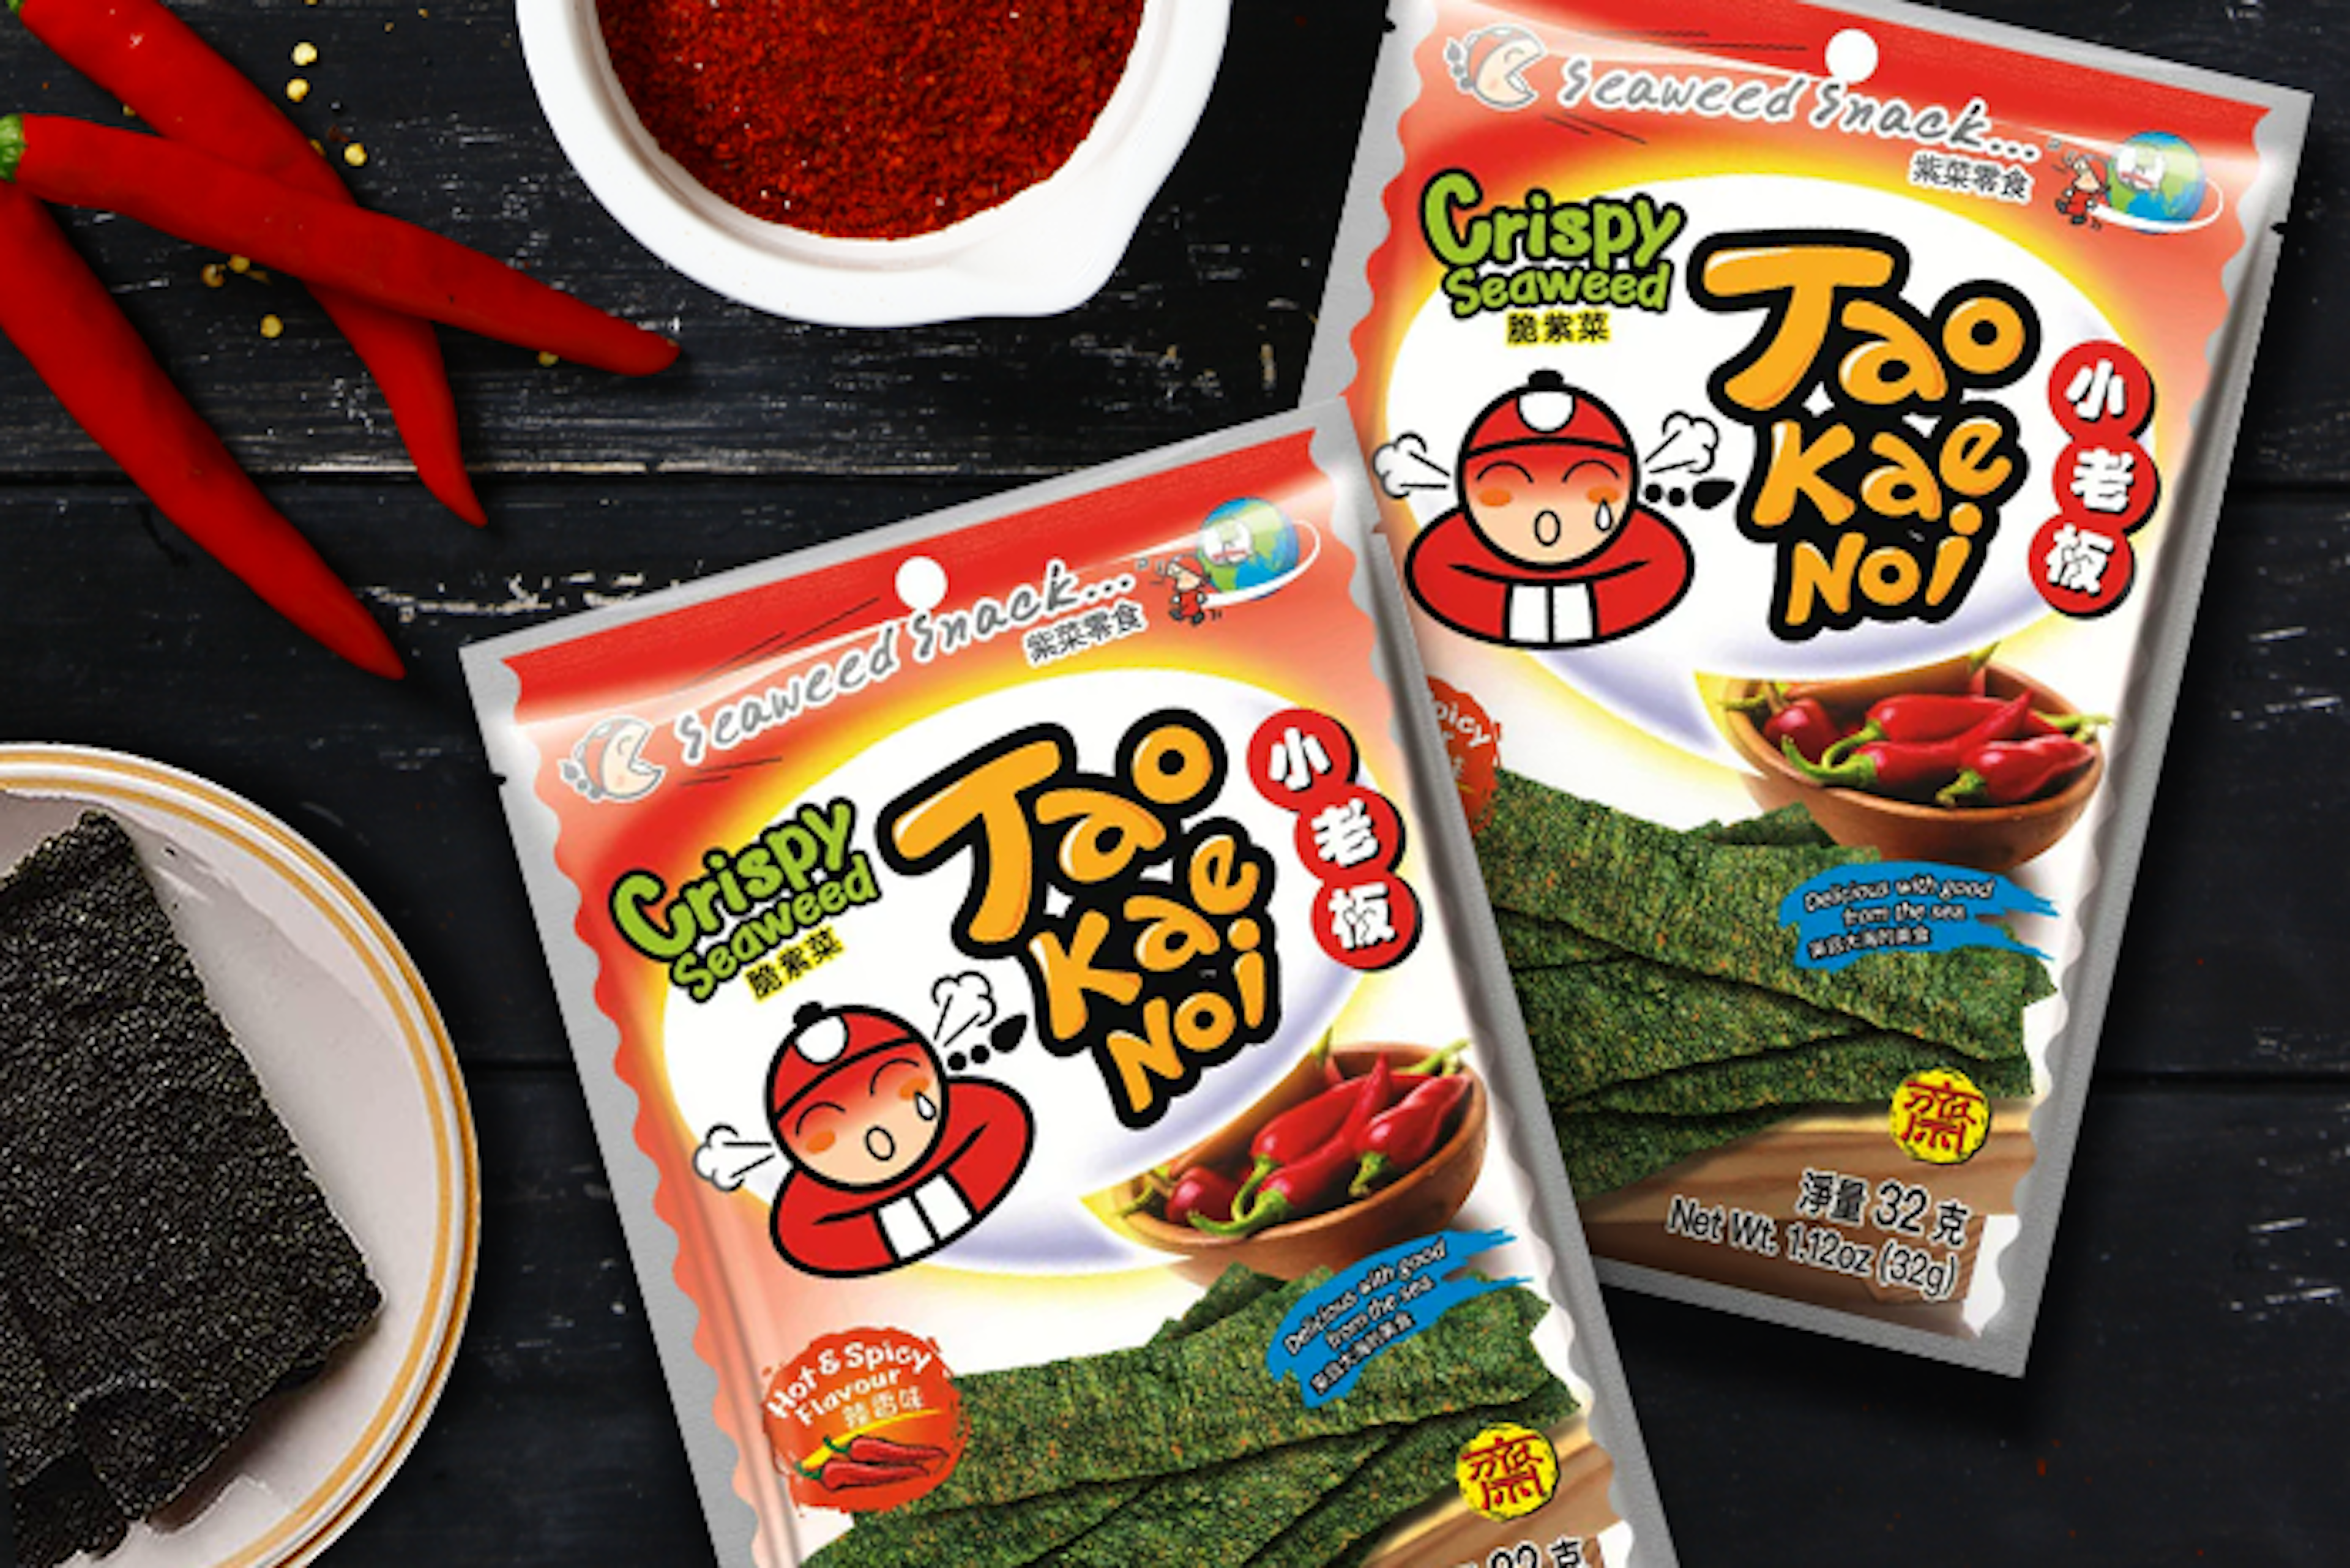 Verpackung von TAOKAENOI Crispy Seaweed Hot & Spicy.